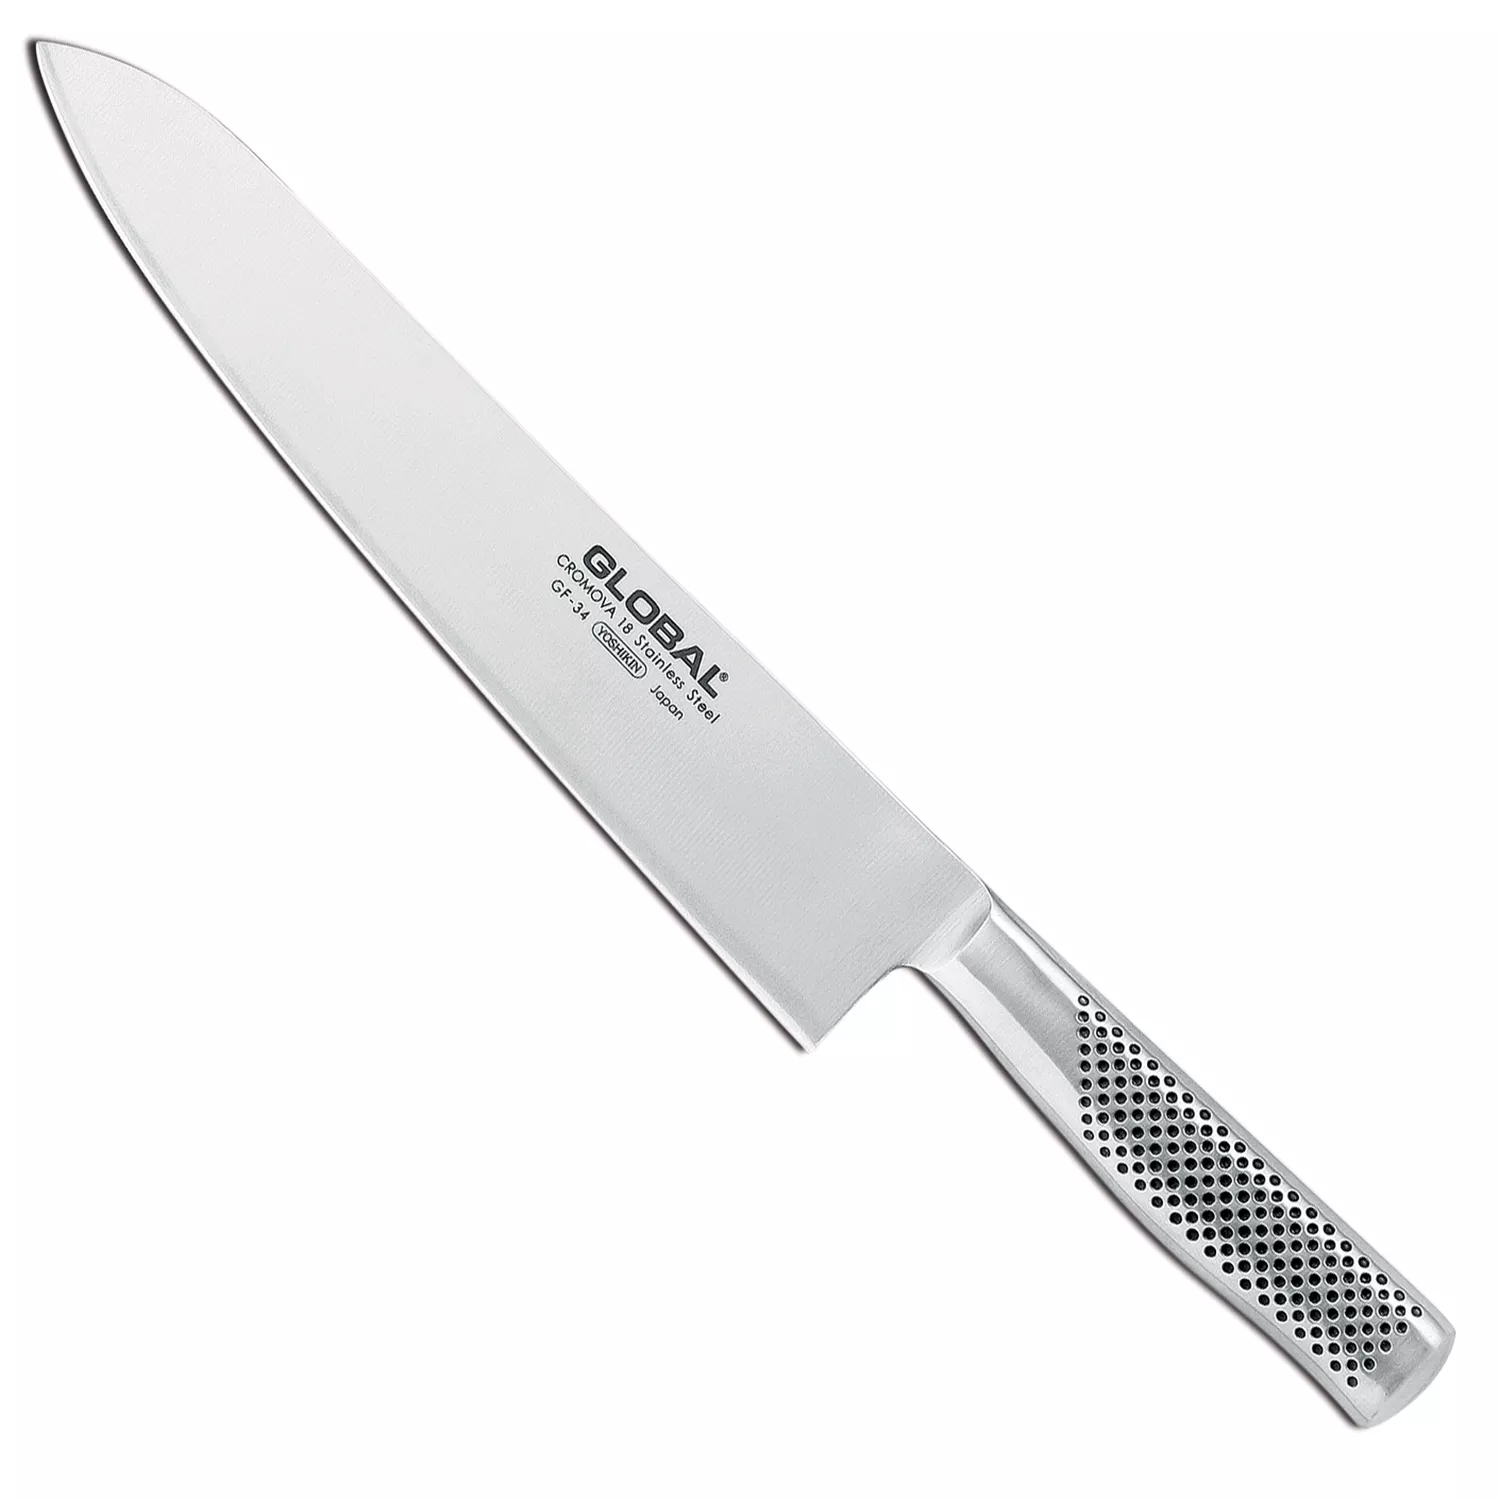 WH-58 Update International Dinner Knife, 18/0 Stainless Steel, Heav